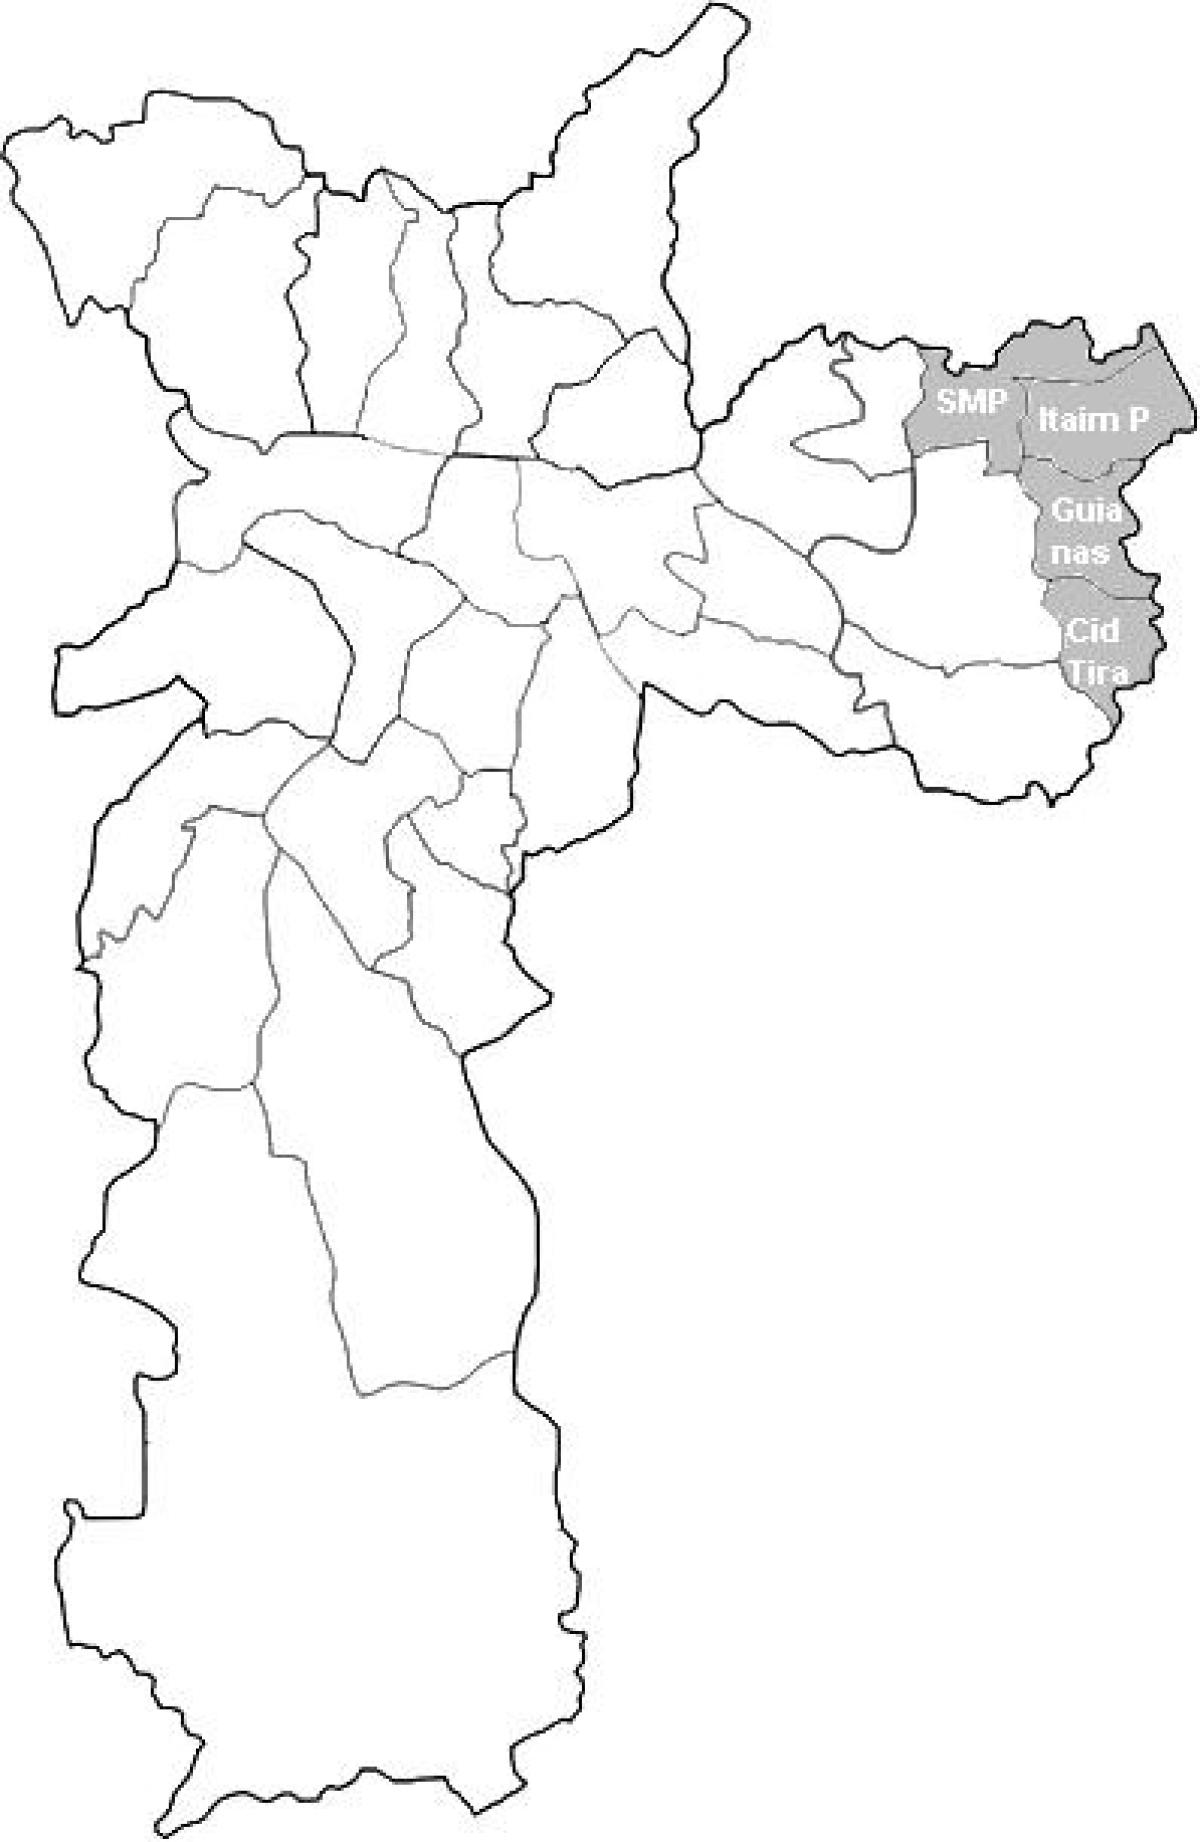 Мапа зоне Тимор 2 Сао Пауло